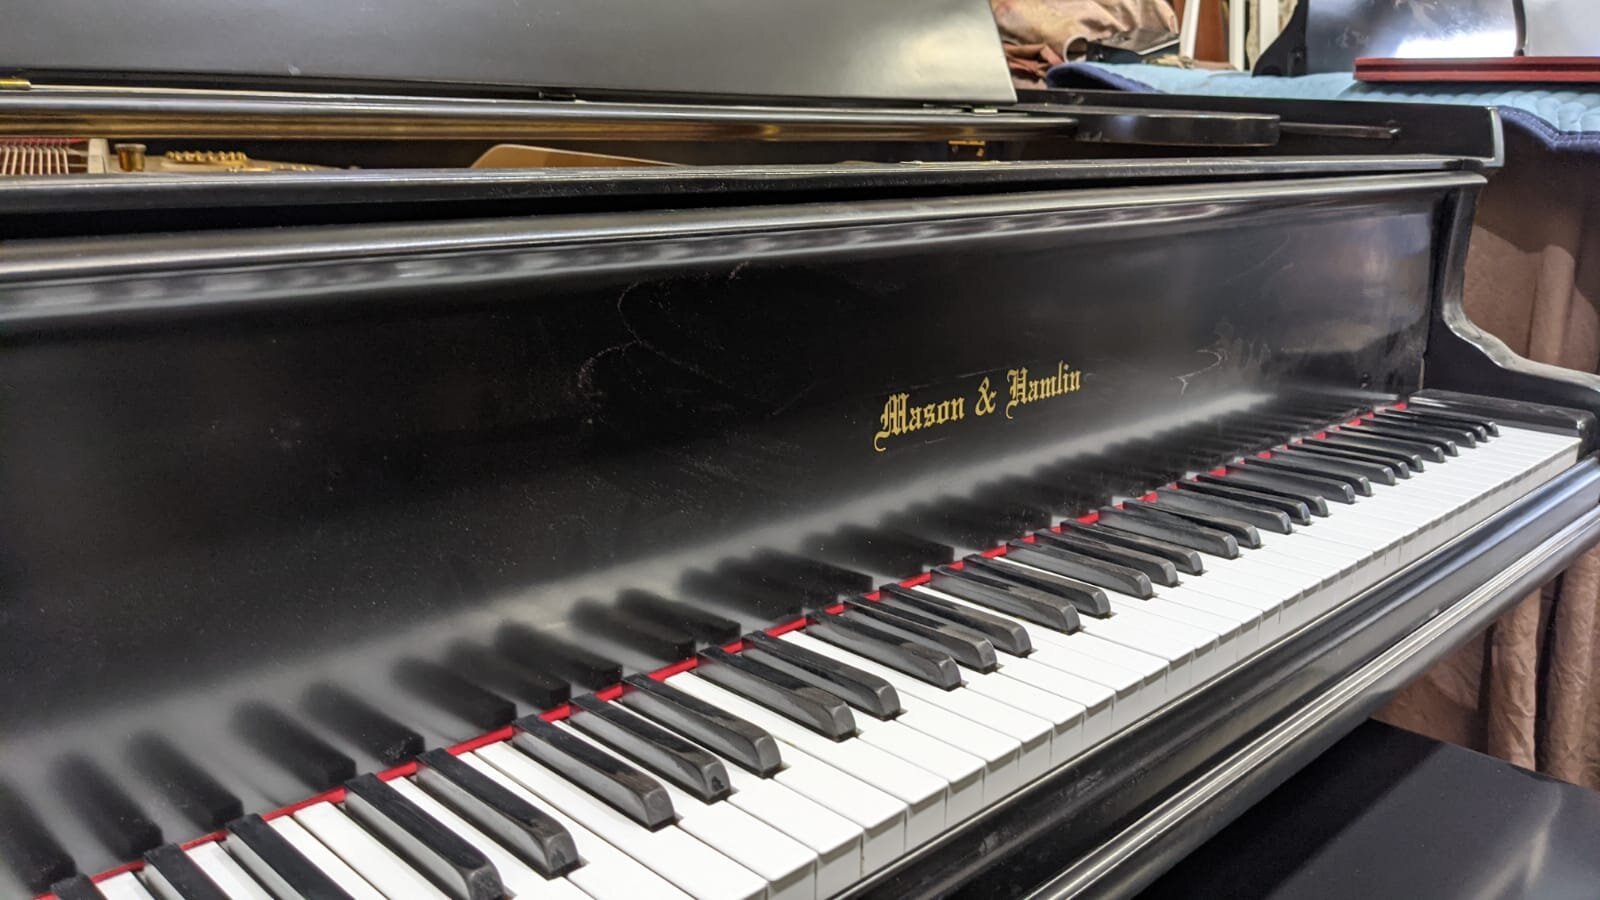 Mason & Hamlin baby grand piano for sale 2.jpeg